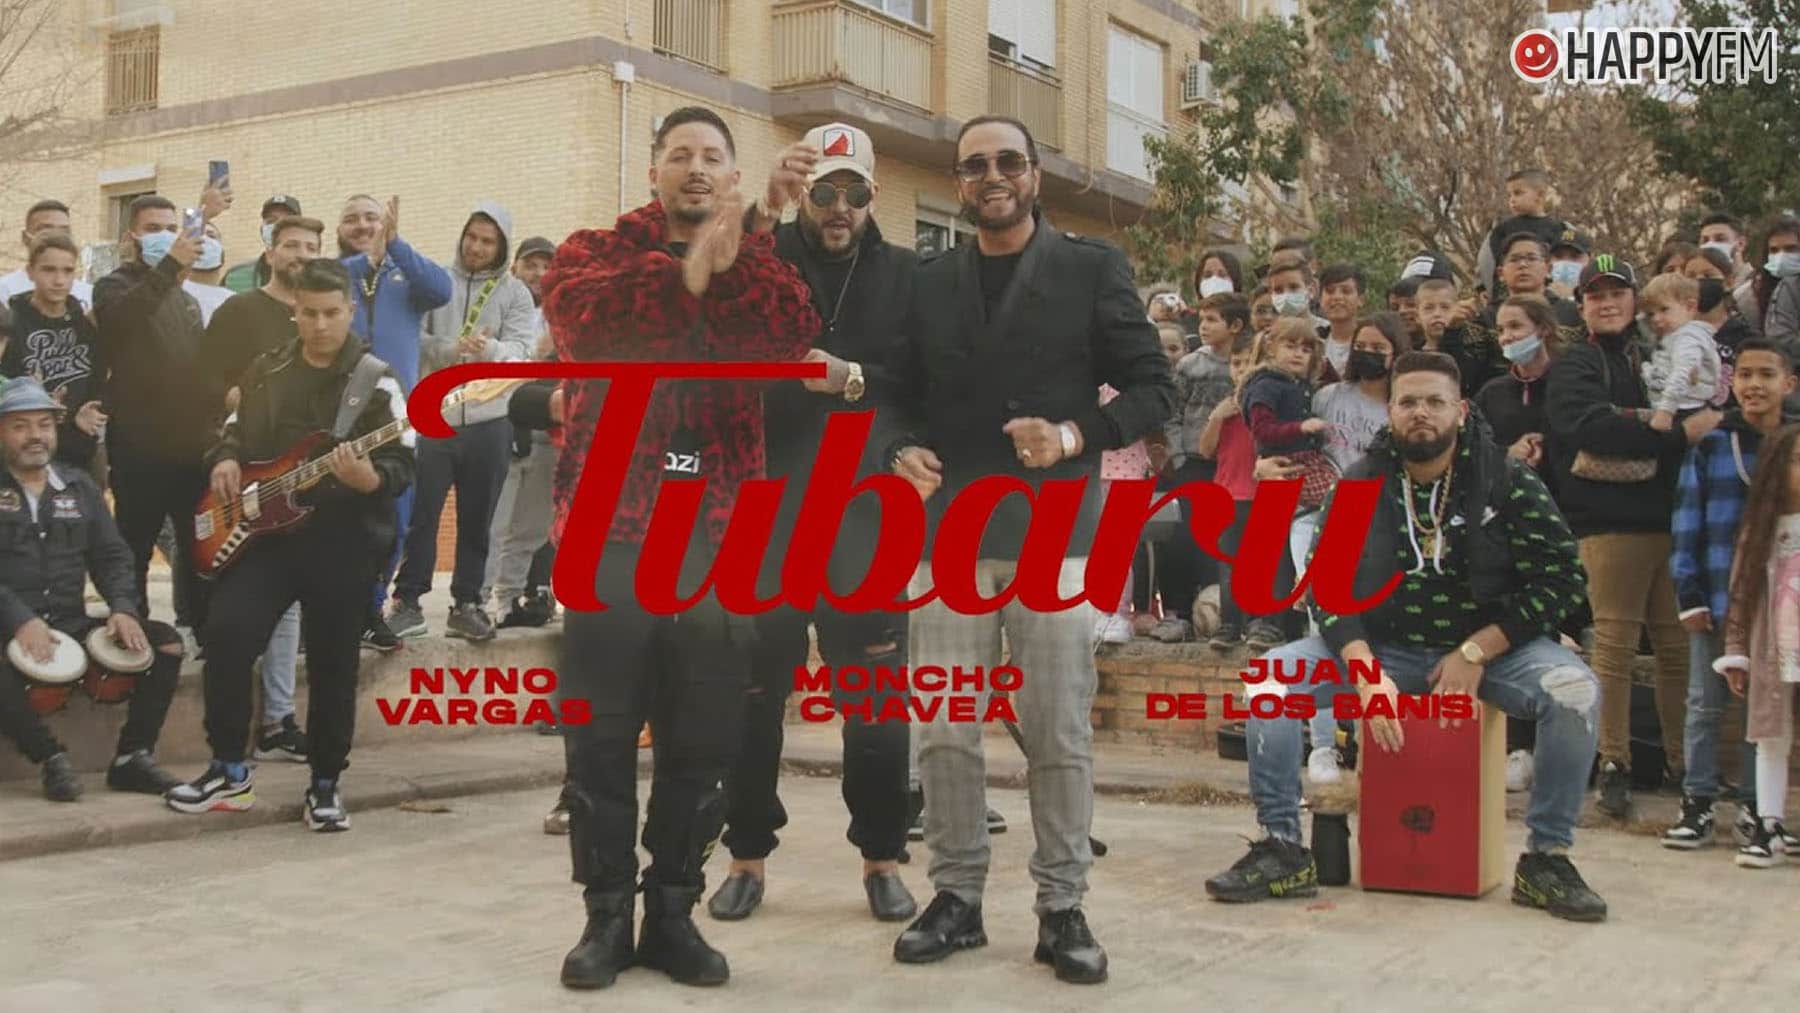 ‘Tubaru’, de Nyno Vargas, Moncho Chavea y Banis: letra y vídeo loading=